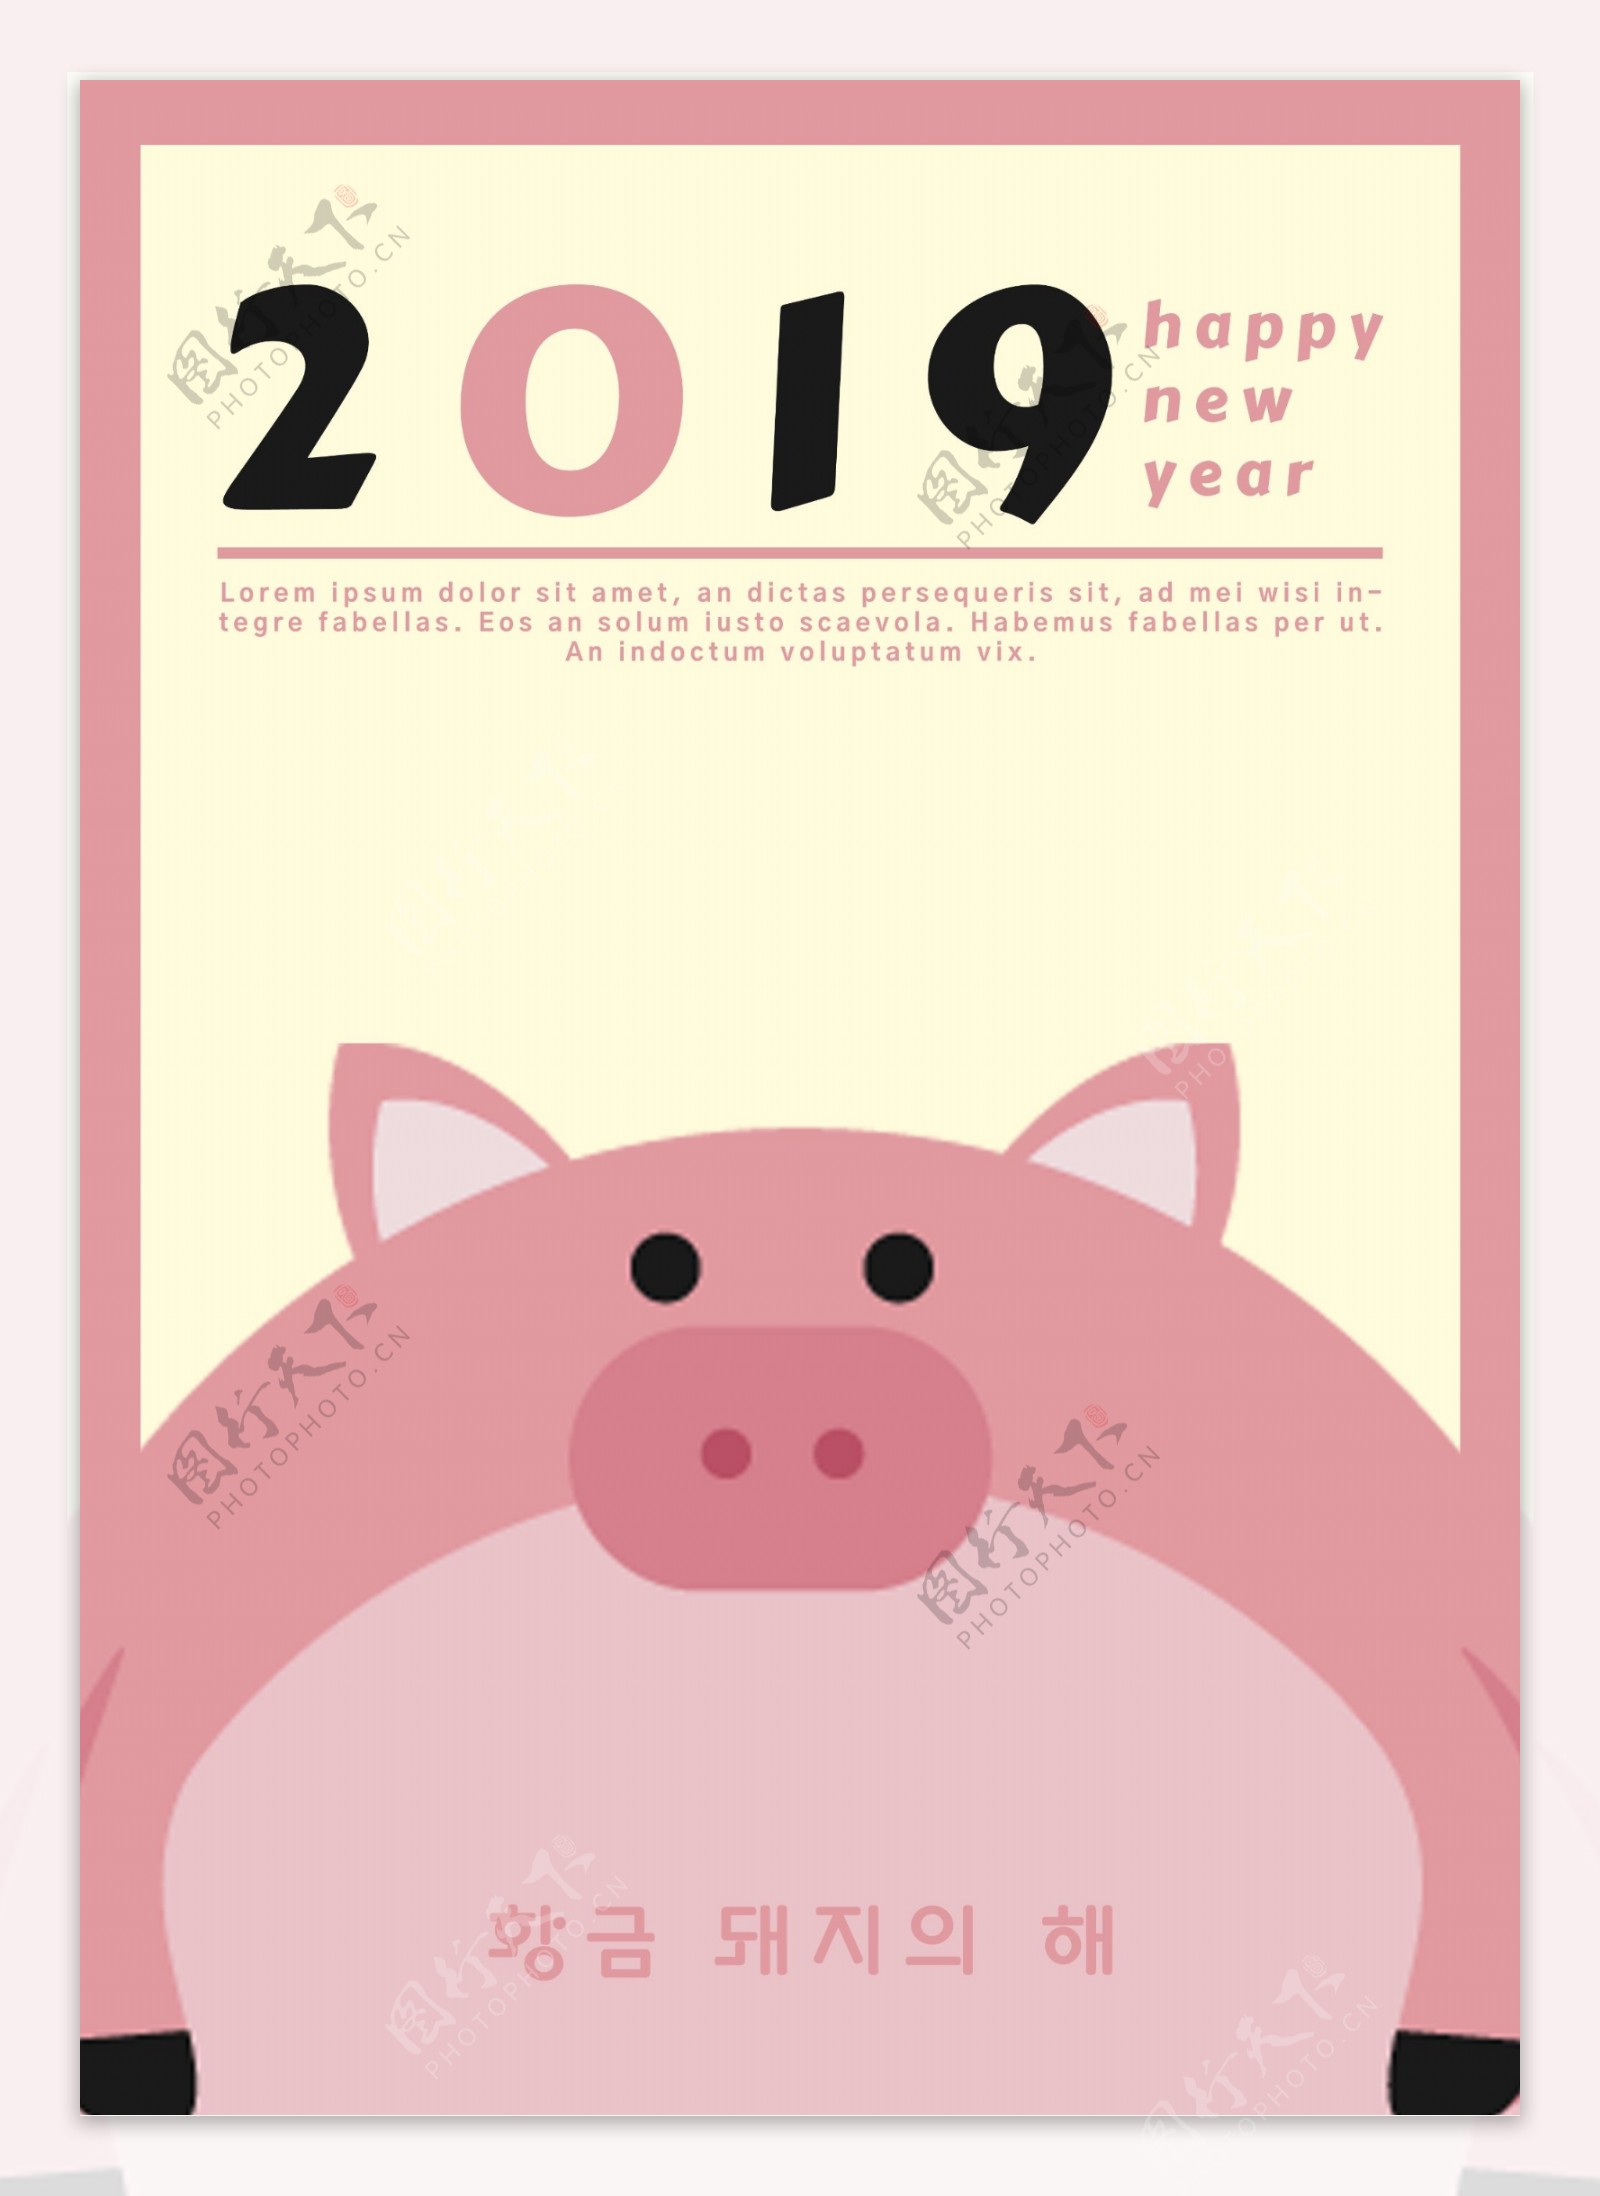 可爱的粉红色小猪2019年新年海报